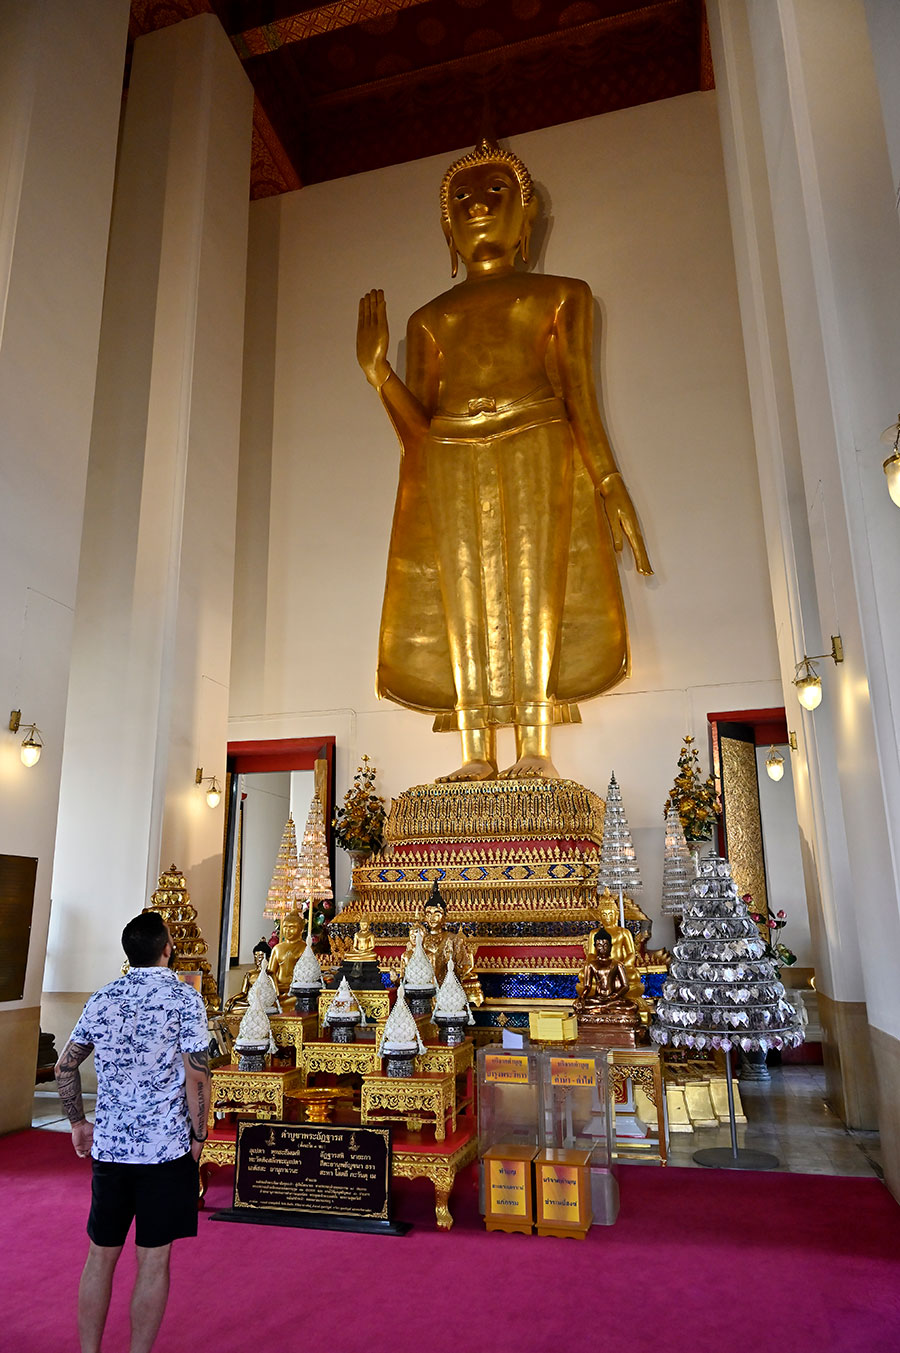 仏教が日常に根付くタイ。仏舎利が納められているこの寺院には、多くの人が参拝に訪れる。